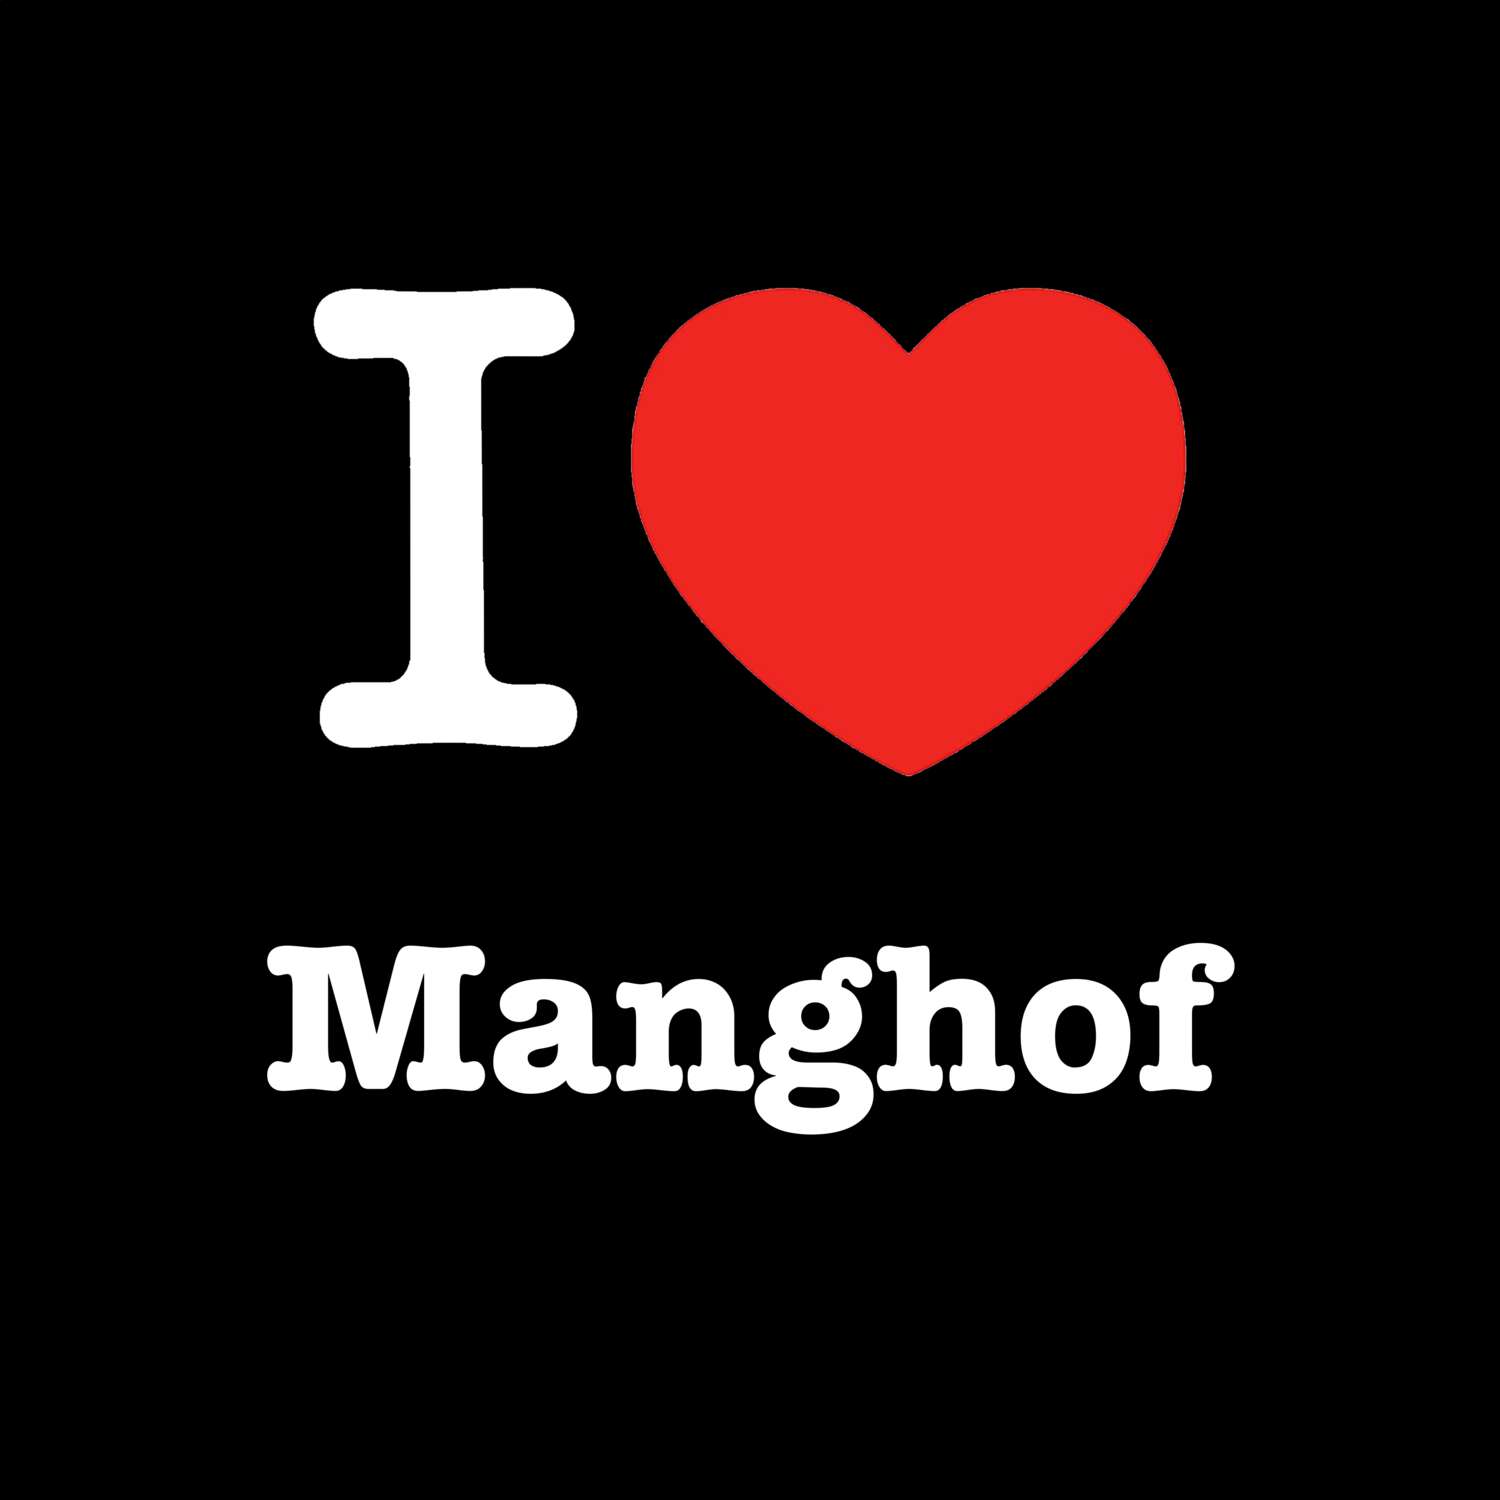 Manghof T-Shirt »I love«